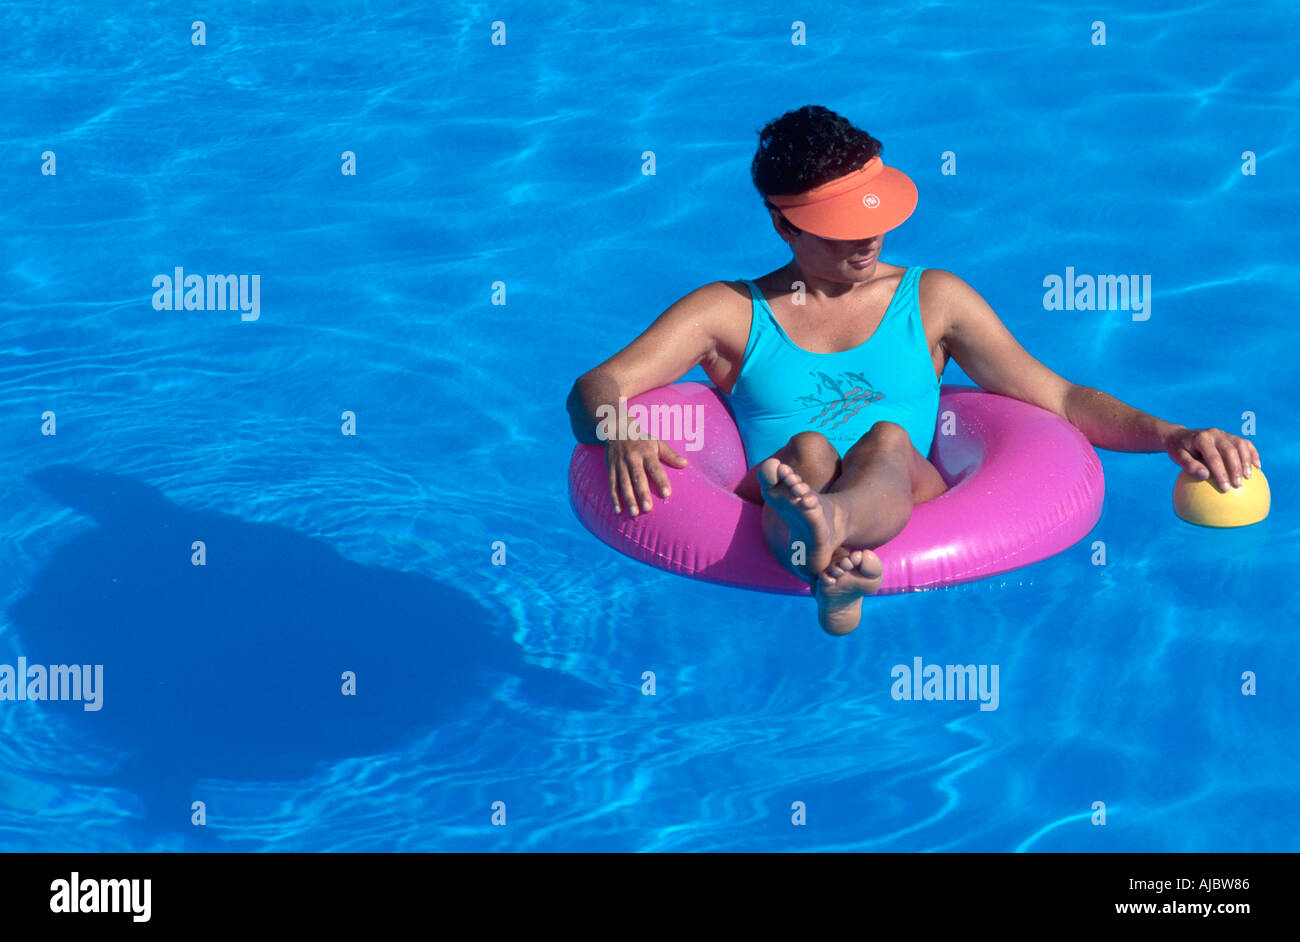 Mujer sentada sobre neumáticos flotantes en la piscina, vistiendo el traje de baño azul Foto de stock